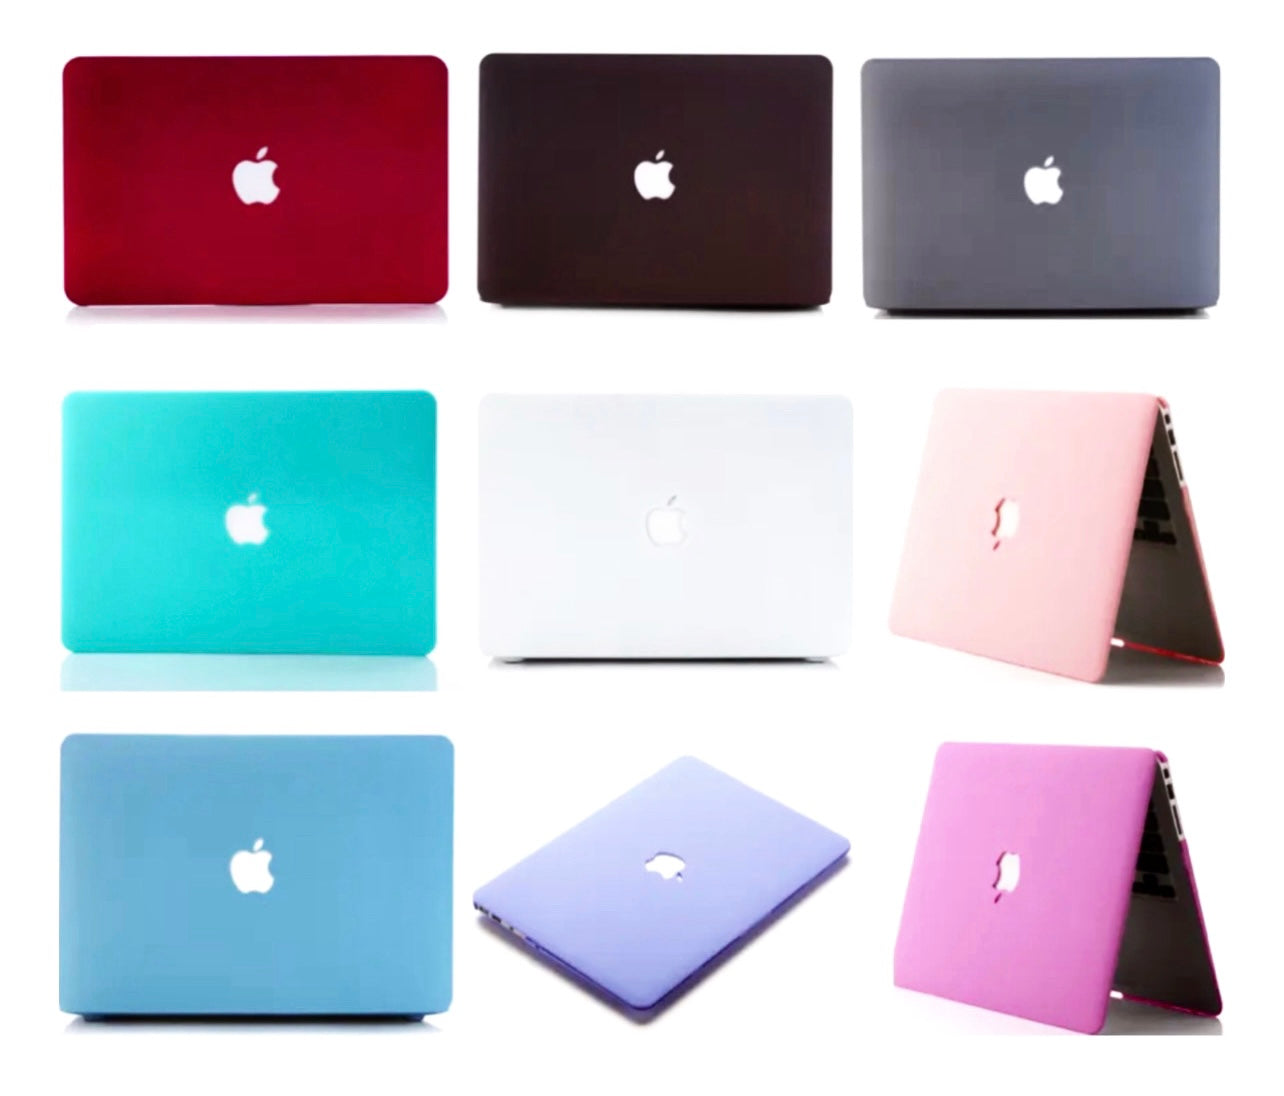 MacBook Cases Matte finish